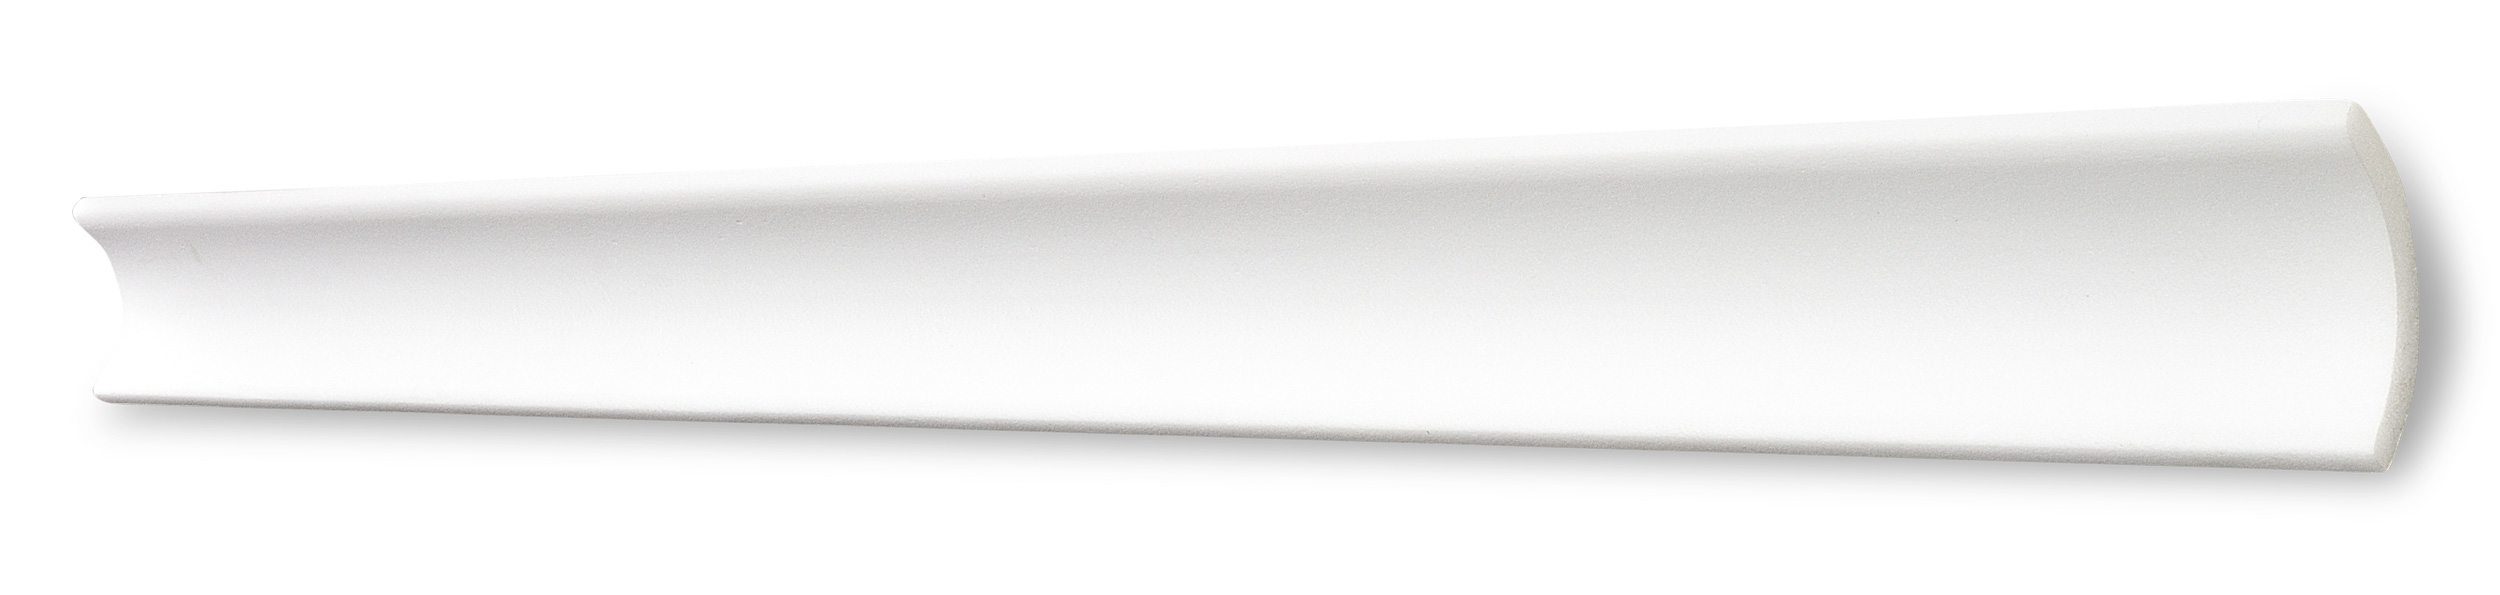 Decosa Zierprofil B5, weiß, 35 x 35 mm, Länge 2 m